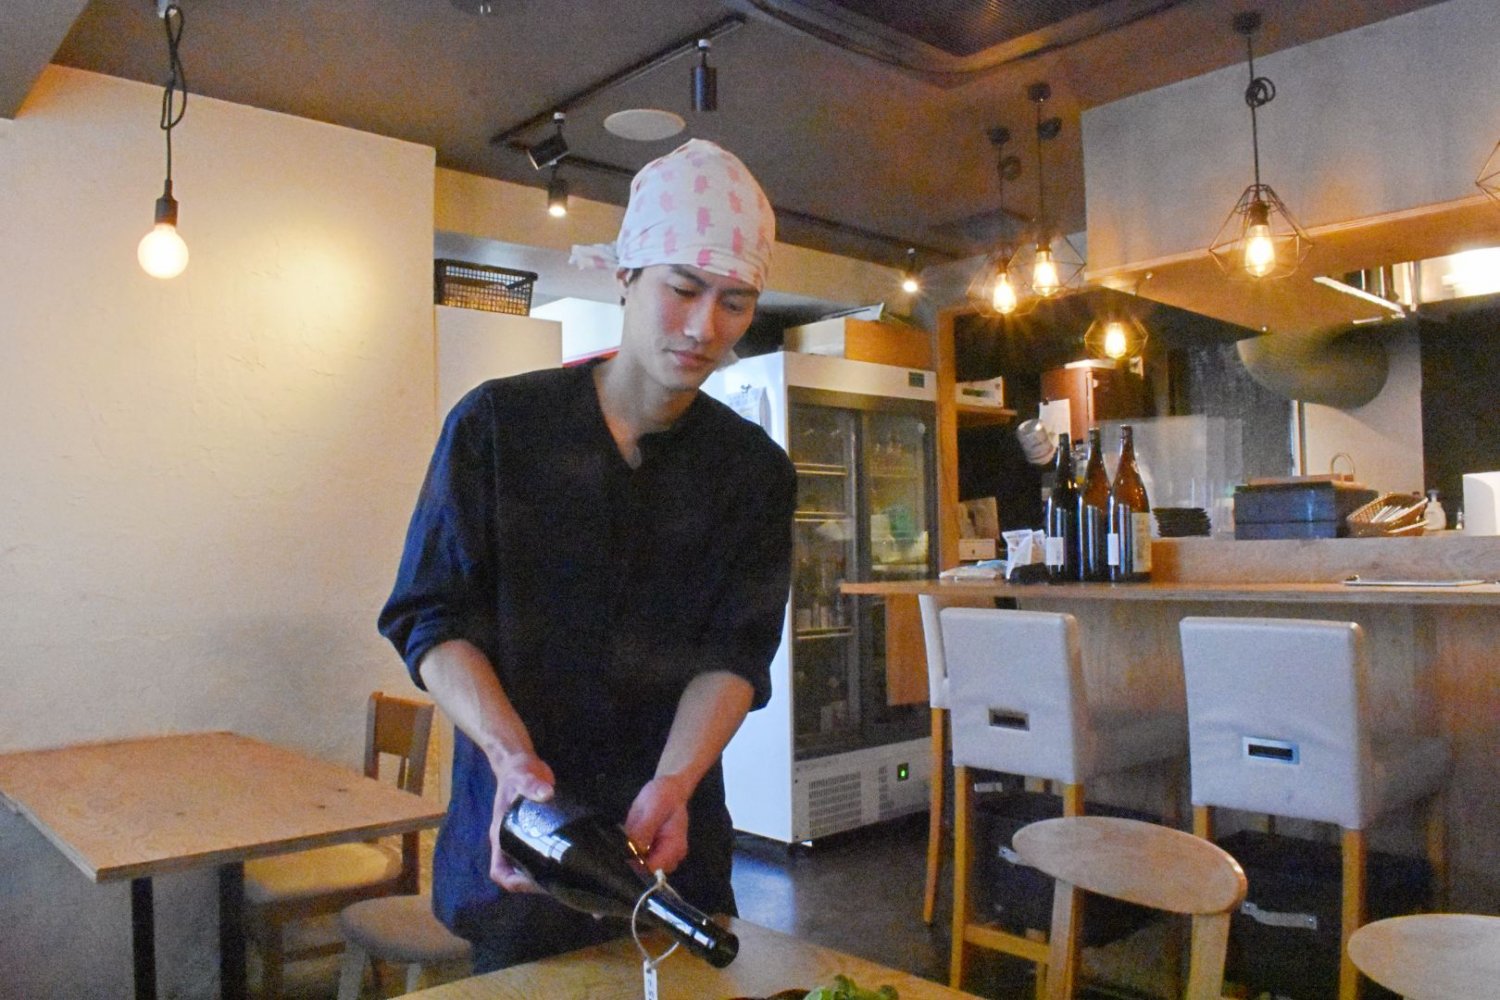 さまざまな創作和食を作る料理人でもある、店長の服部さん。